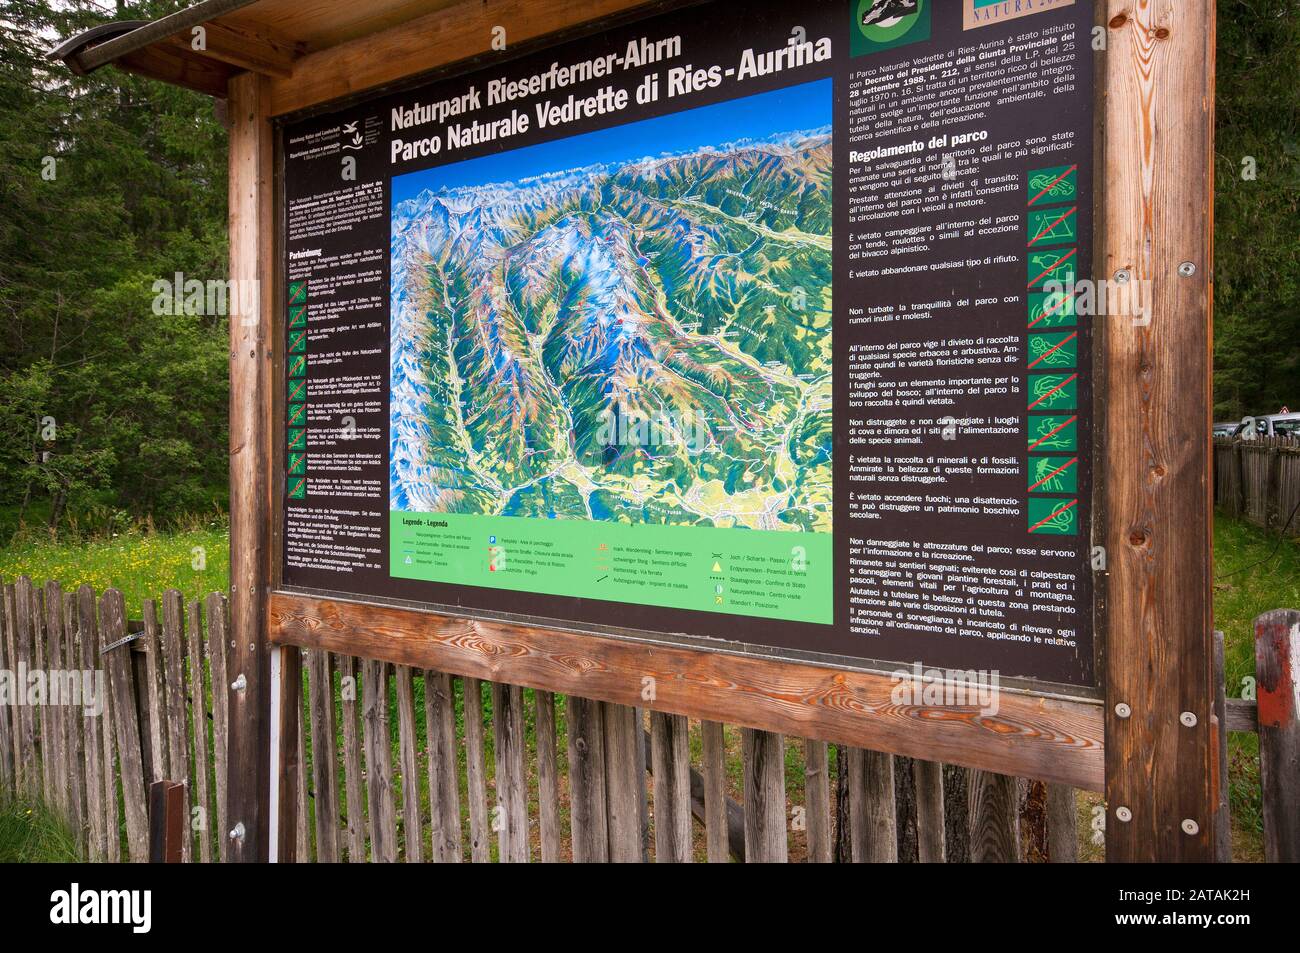 Bacheca Informativa Nel Parco Naturale Vedrette Di Ries-Aurina, Valle  Anterselva (Anterolzertal), Osttirol, Trentino Alto Adige, Italia Foto  stock - Alamy